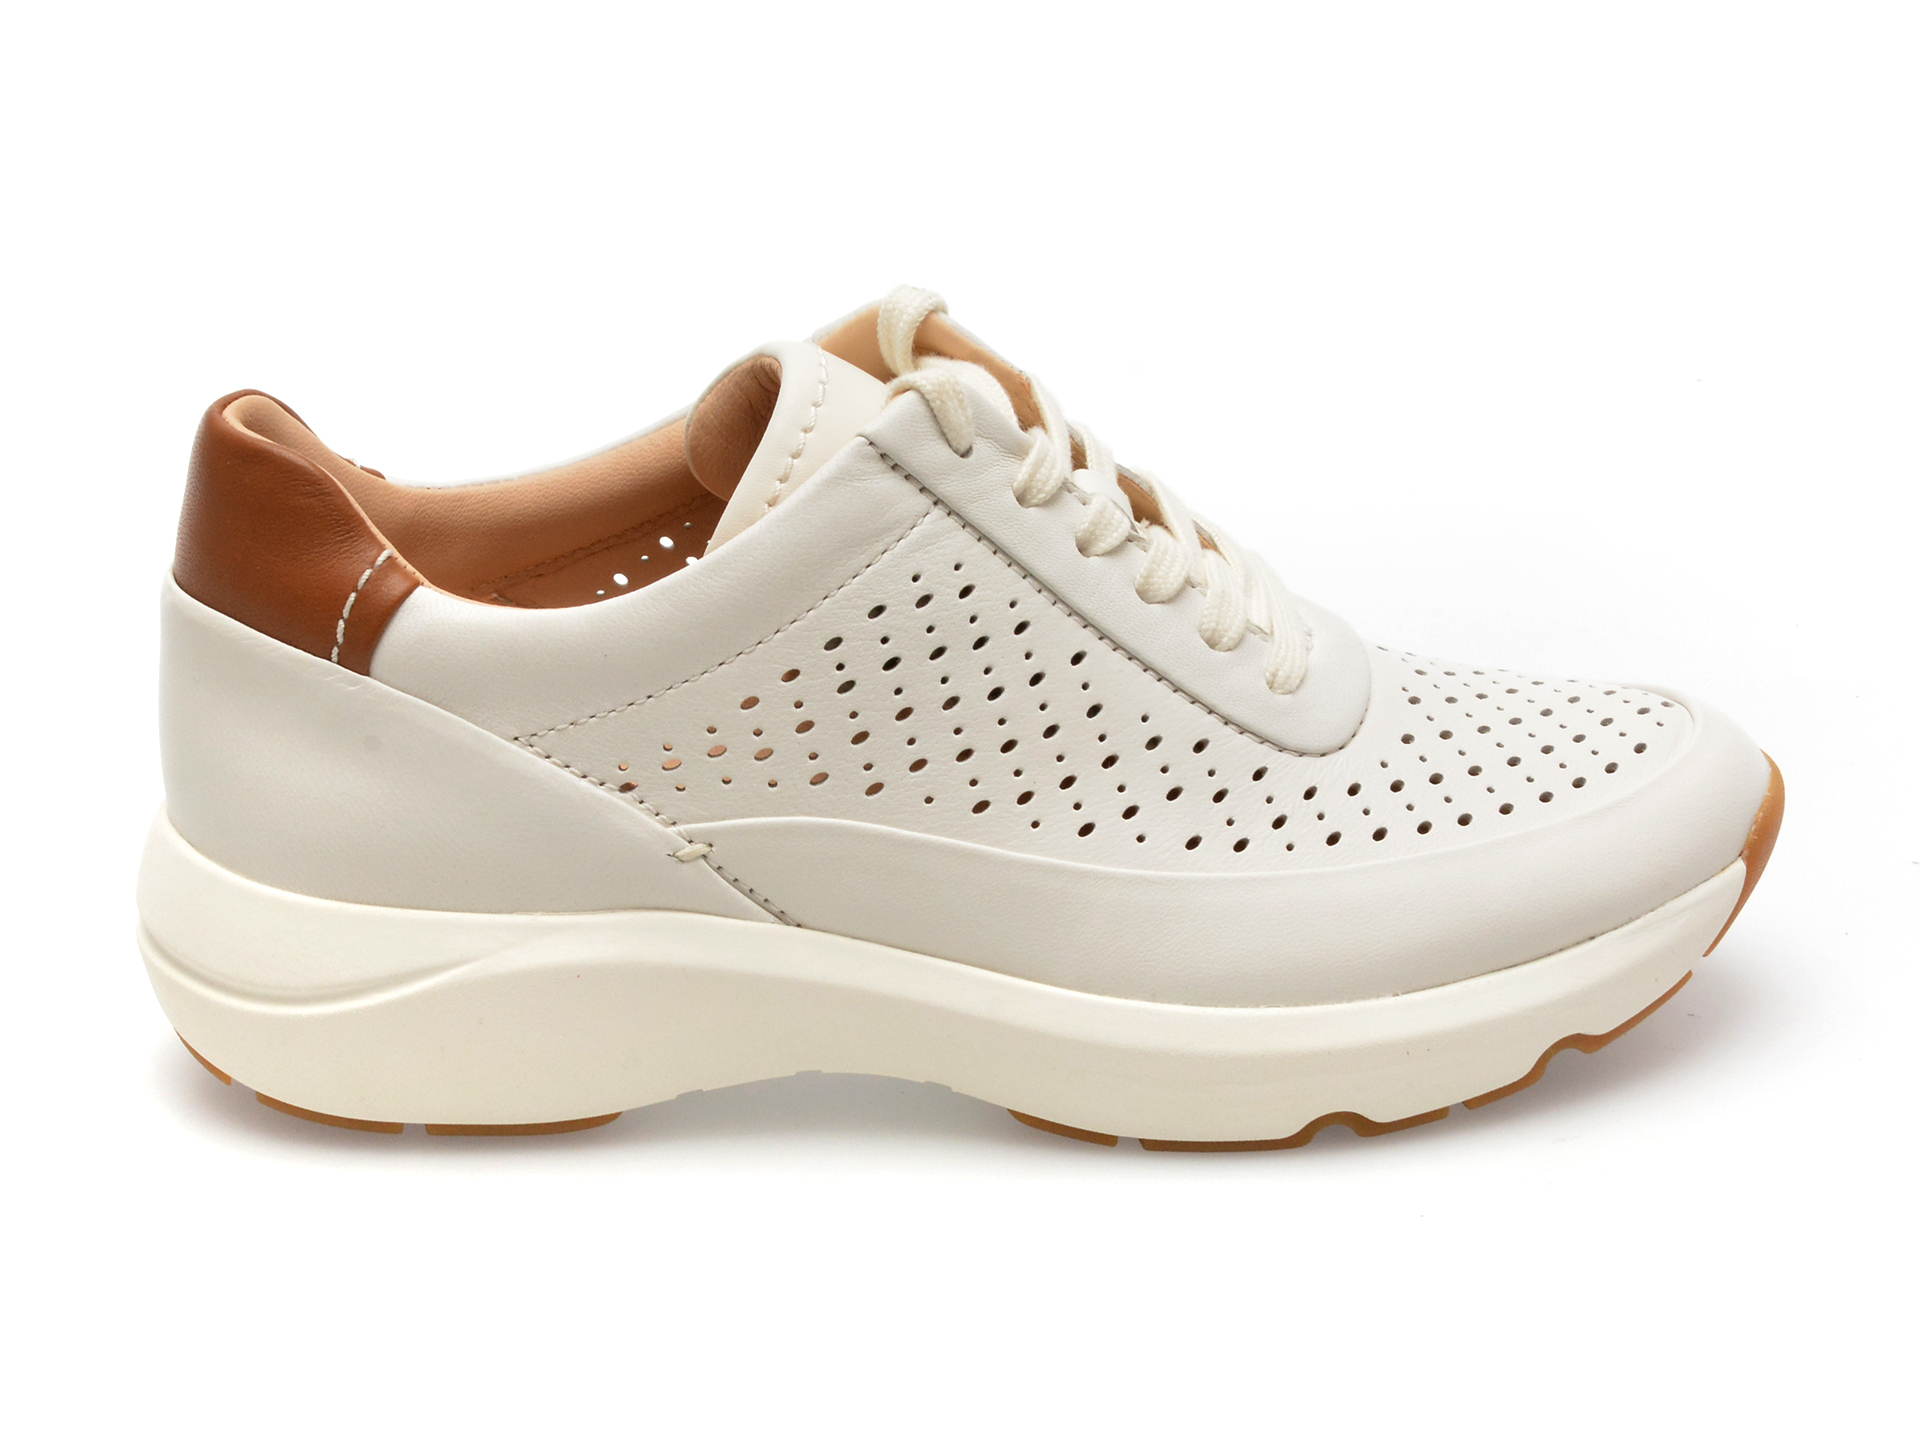 Pantofi CLARKS albi, TIVOGRA, din piele naturala